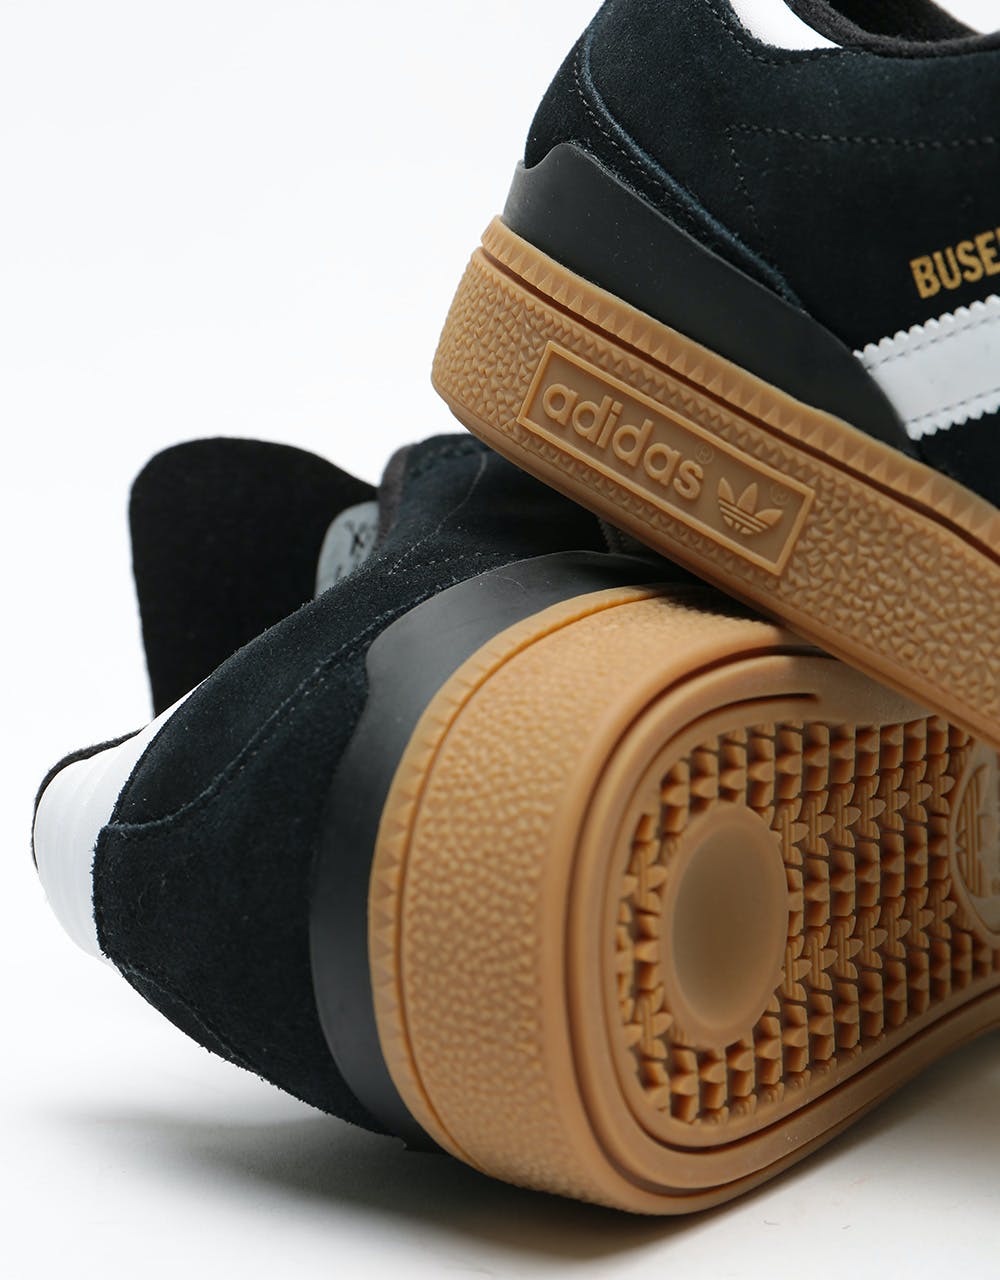 Adidas Busenitz Pro Skate Shoes - Black/Running White/Metallic Gold